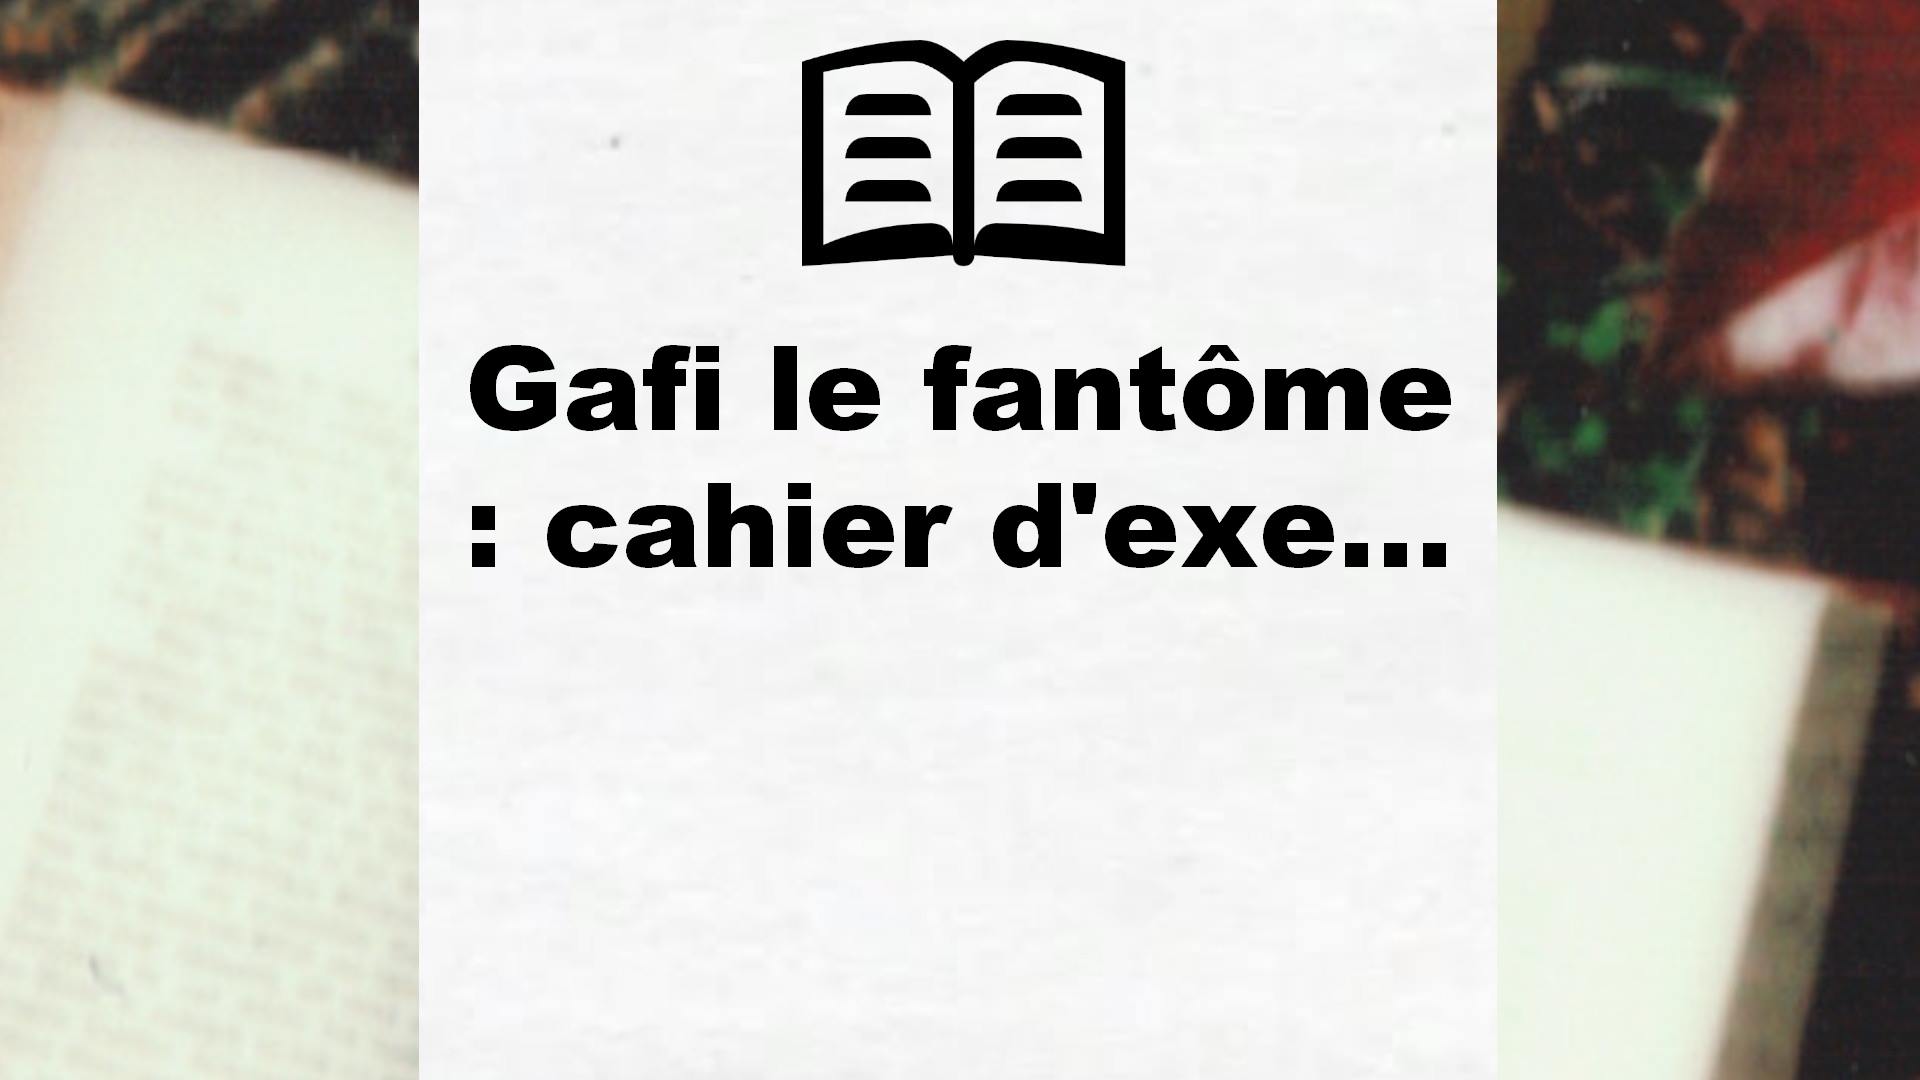 Gafi le fantôme : cahier d’exe… – Critique